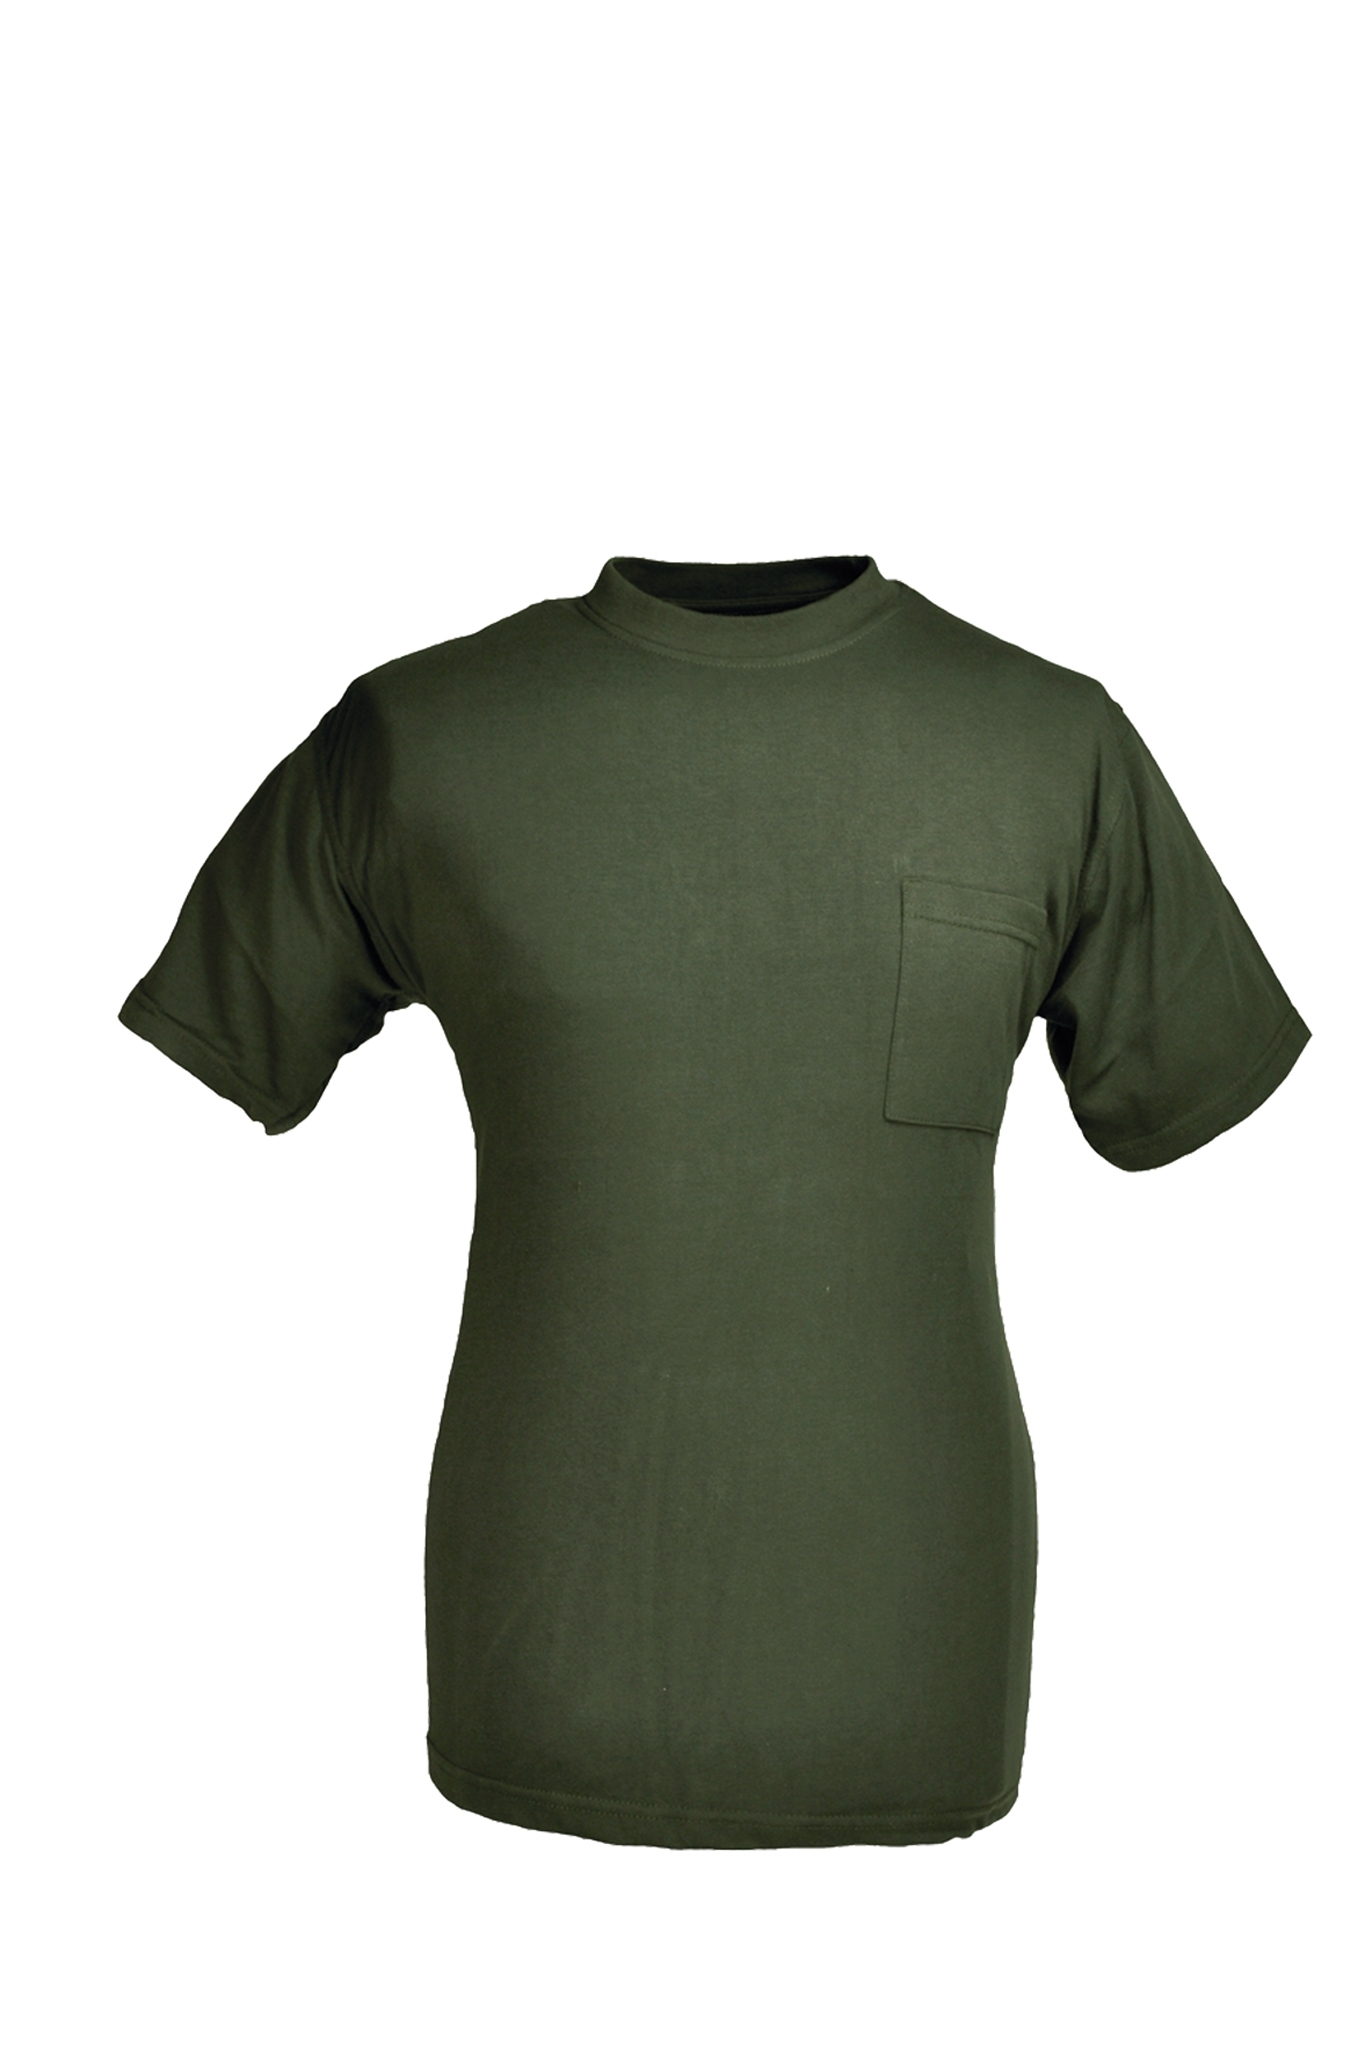 Rundhals T-Shirt oliv Gr.M 10227843